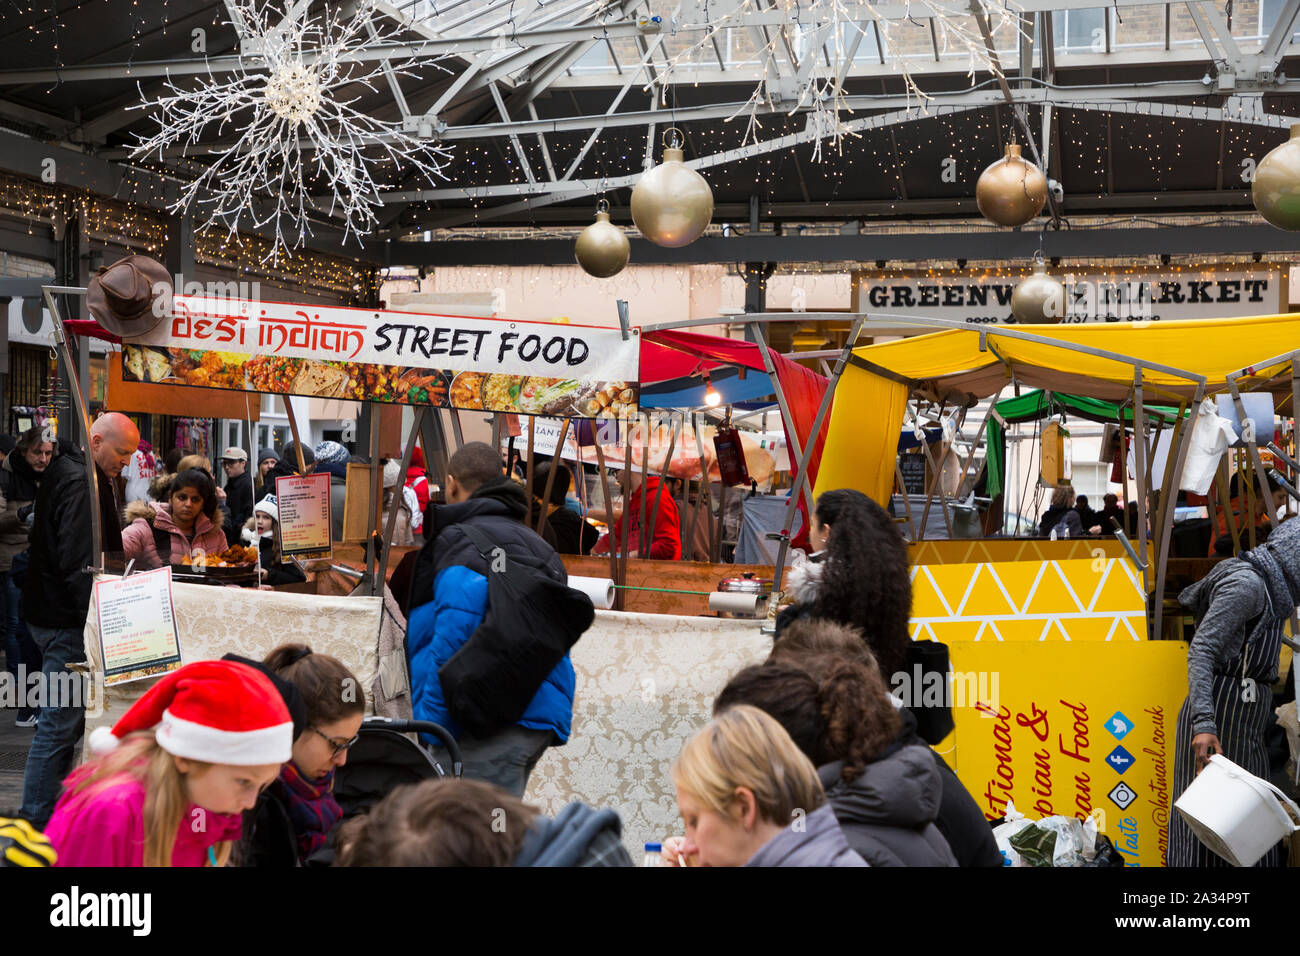 Food for street food indien à emporter / à emporter à emporter / au sein de Greenwich Market à Noël avec des décorations. Greenwich, Londres. Royaume-uni (105) Banque D'Images